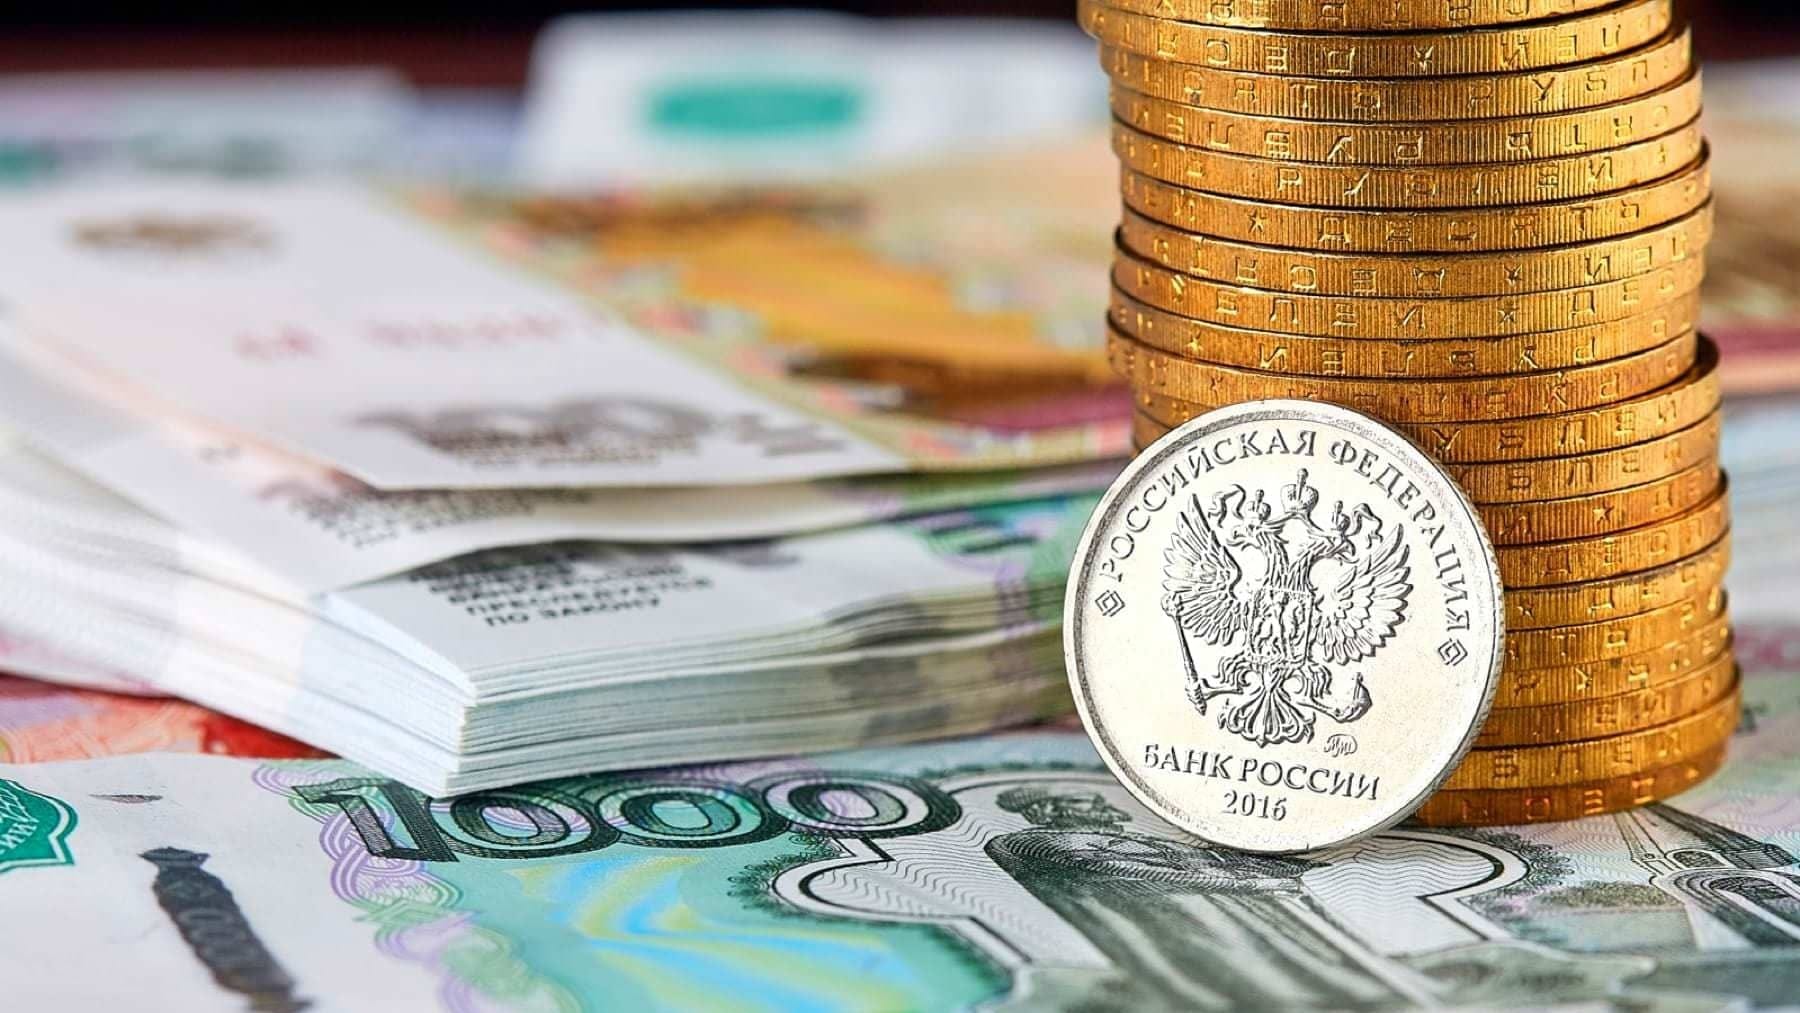 Рубль подорожал на 0.5% – официальные курсы валют